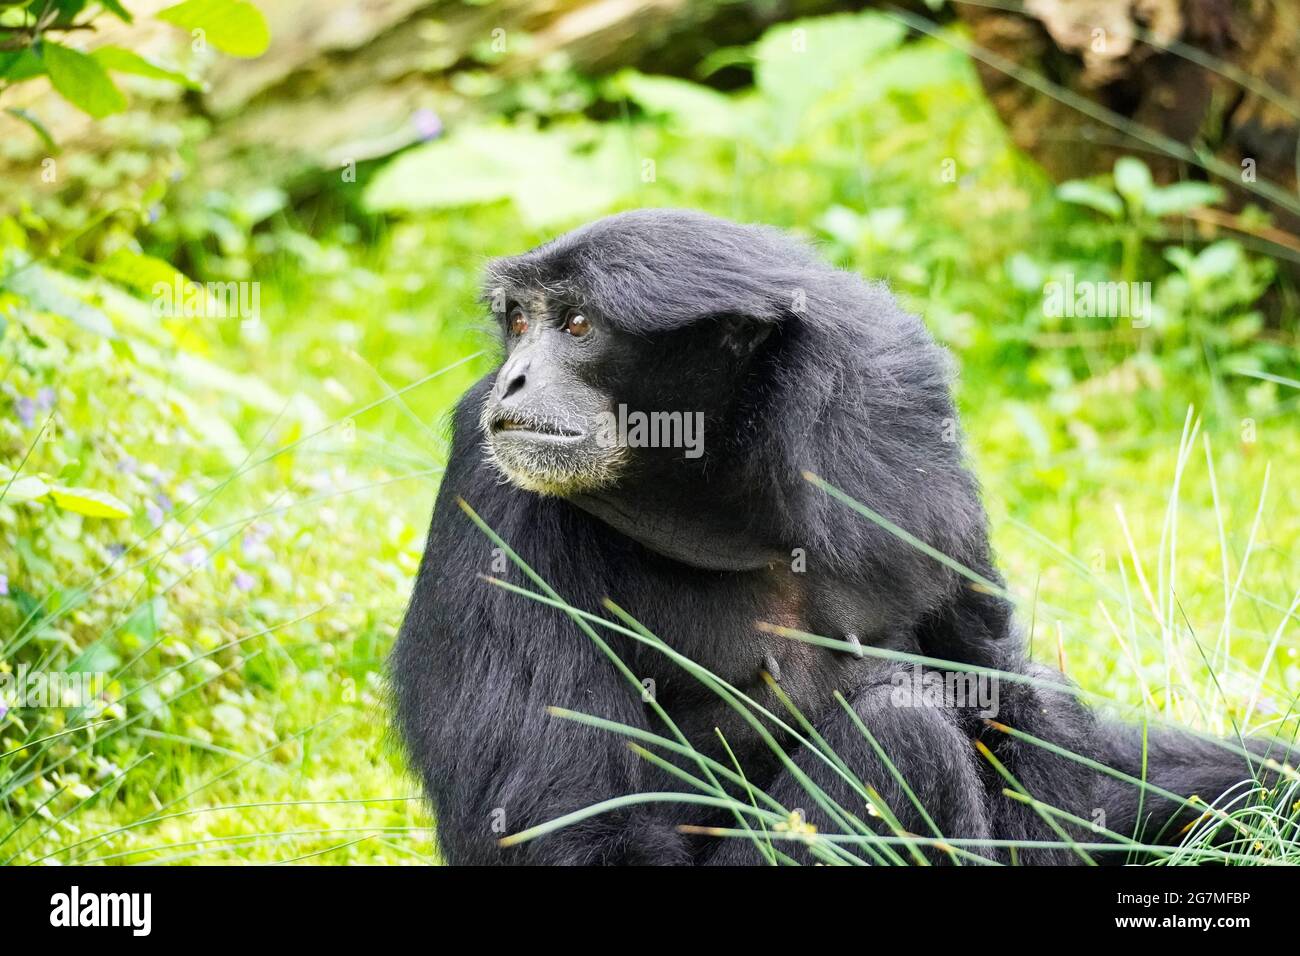 Porträt eines Siamang (Symphonangus syndactylus). Primatenart aus der Gibbon-Familie (Hylobatidae). Affe mit schwarzem Fell. Stockfoto